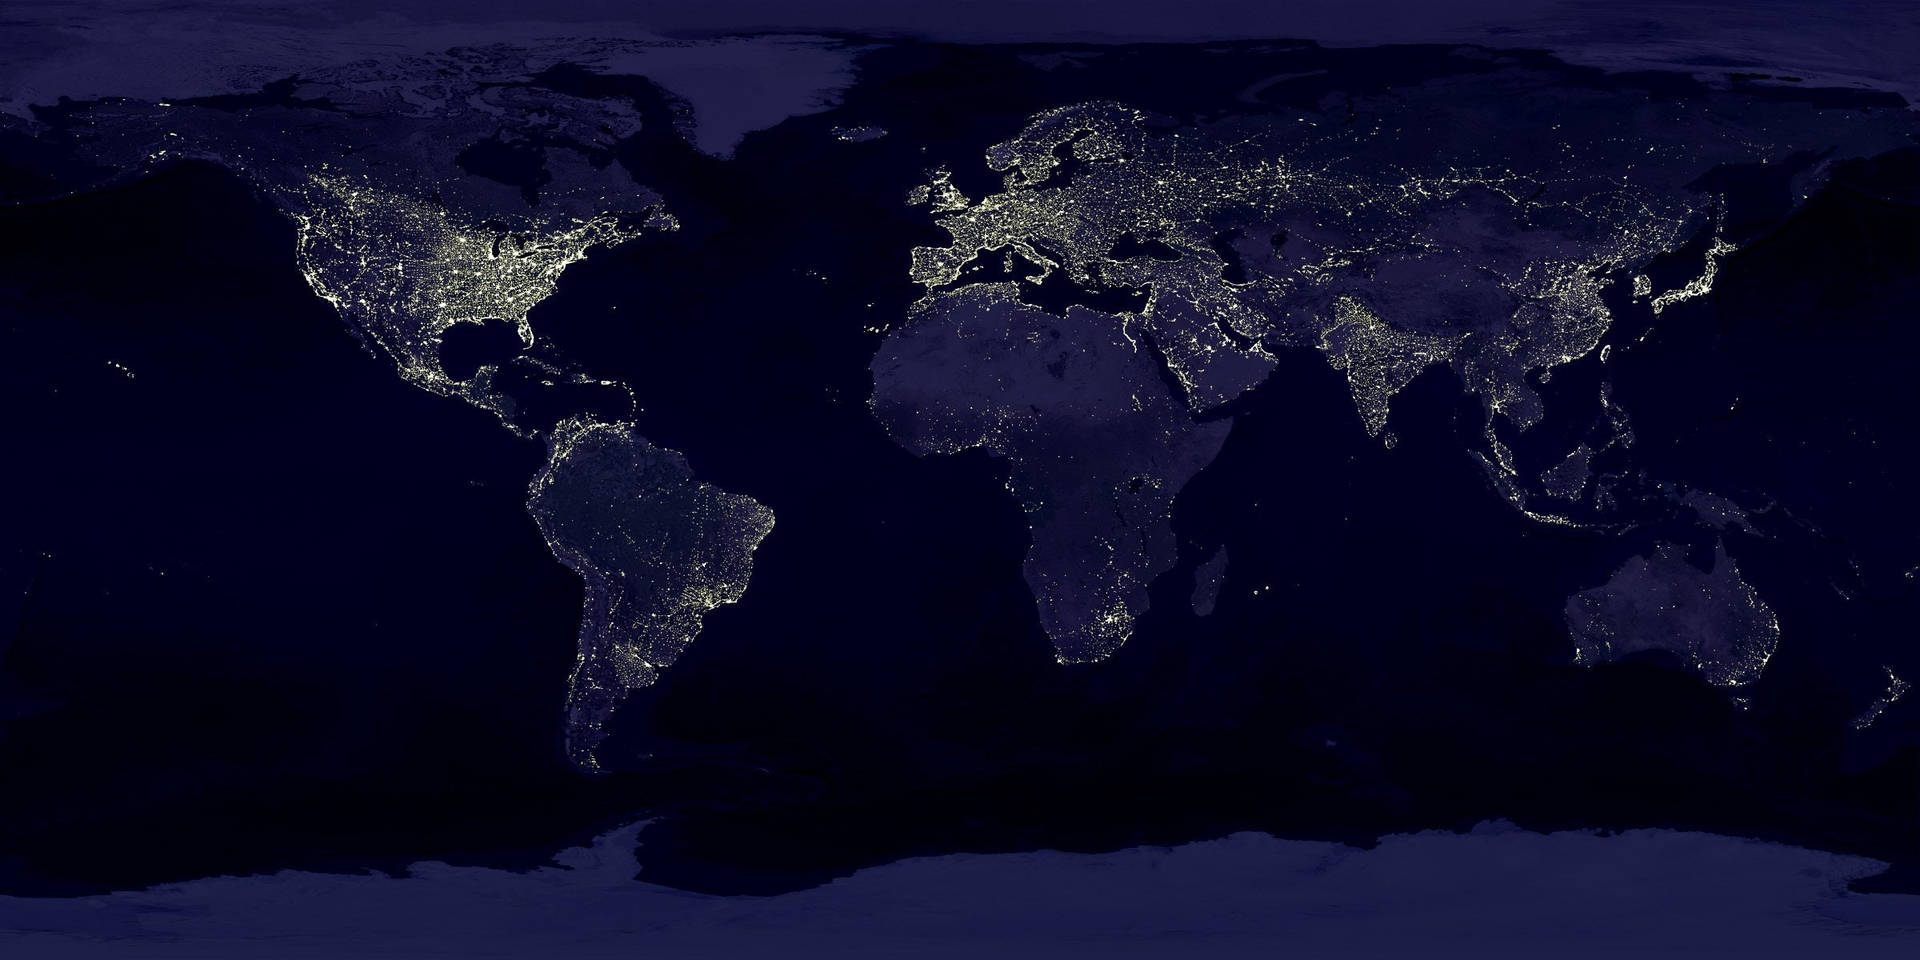 Einsatellitenbild Der Welt Bei Nacht Wallpaper